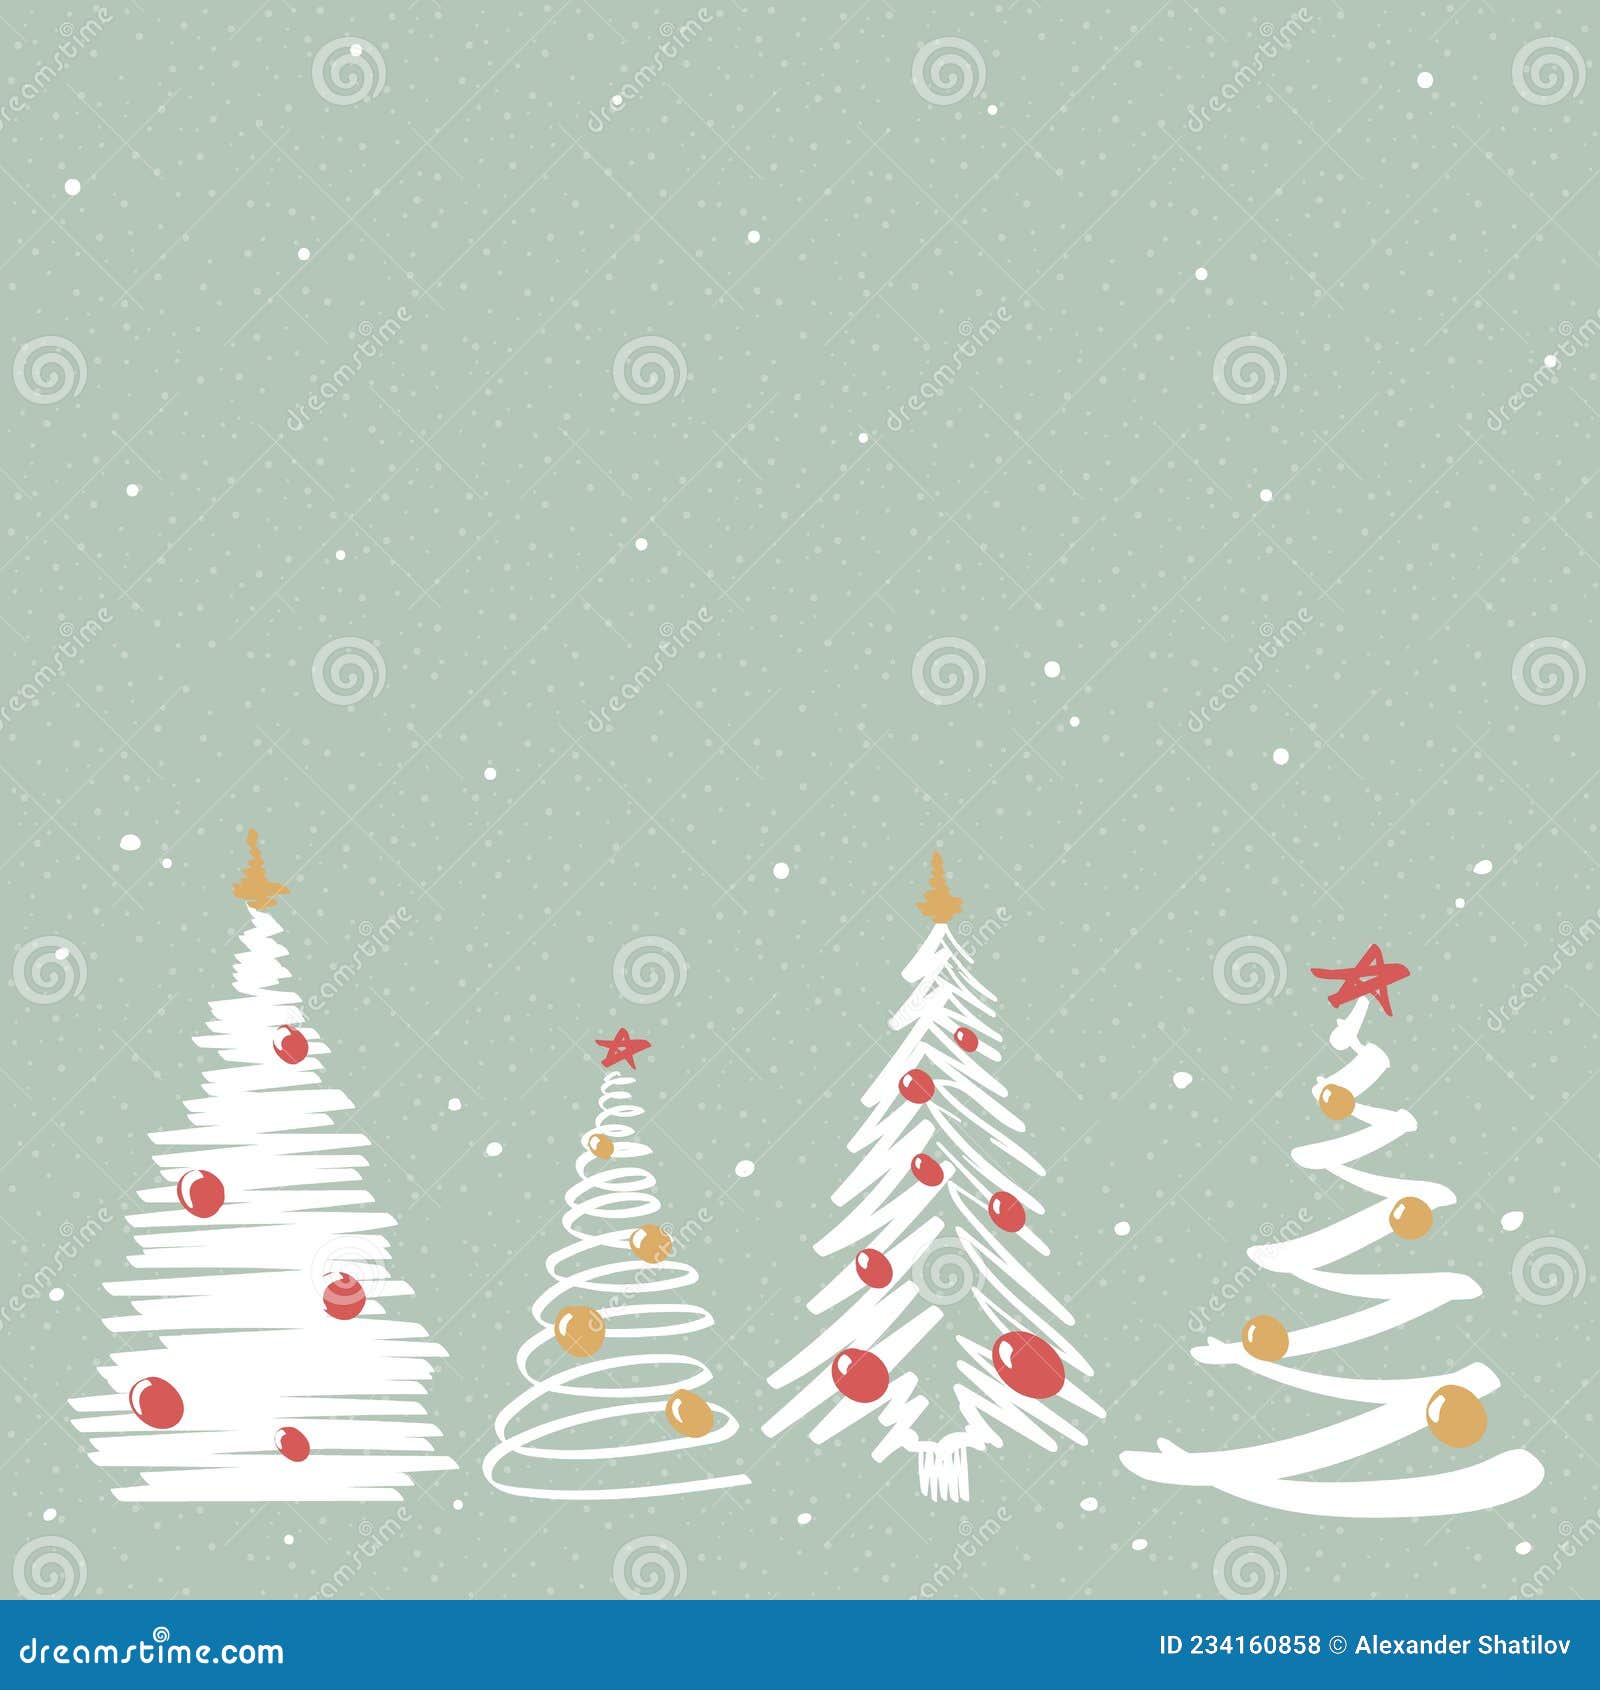 Hình nền Giáng Sinh màu xanh lá cây sẽ mang đến cho bạn cảm giác thư thái và thanh bình. Màu xanh của cây thông và màu xanh lá của rừng thông thơm, tươi mát sẽ tái hiện cho bạn cảm giác yên bình mà mùa Noel mang lại. Tài nguyên này sẽ giúp bạn giảm stress, tăng cường sự tập trung và tập trung vào công việc hiệu quả hơn. Hãy tải về ngay!